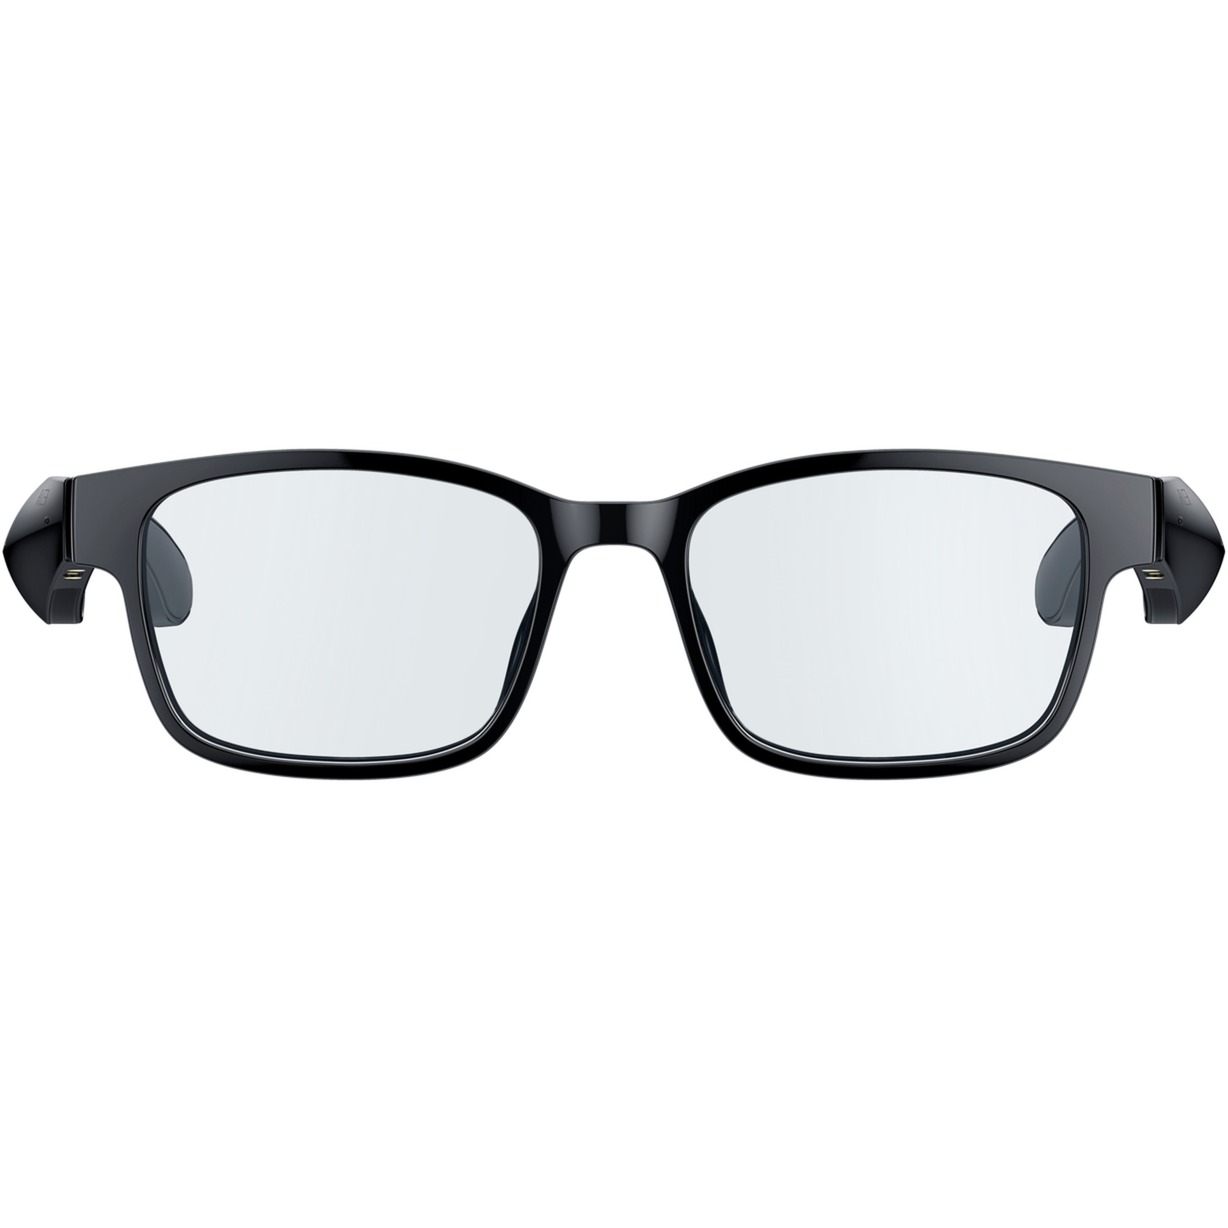 Image of Alternate - Anzu Smart Glasses (S/M, Rechteckig), Multimedia-Brille online einkaufen bei Alternate